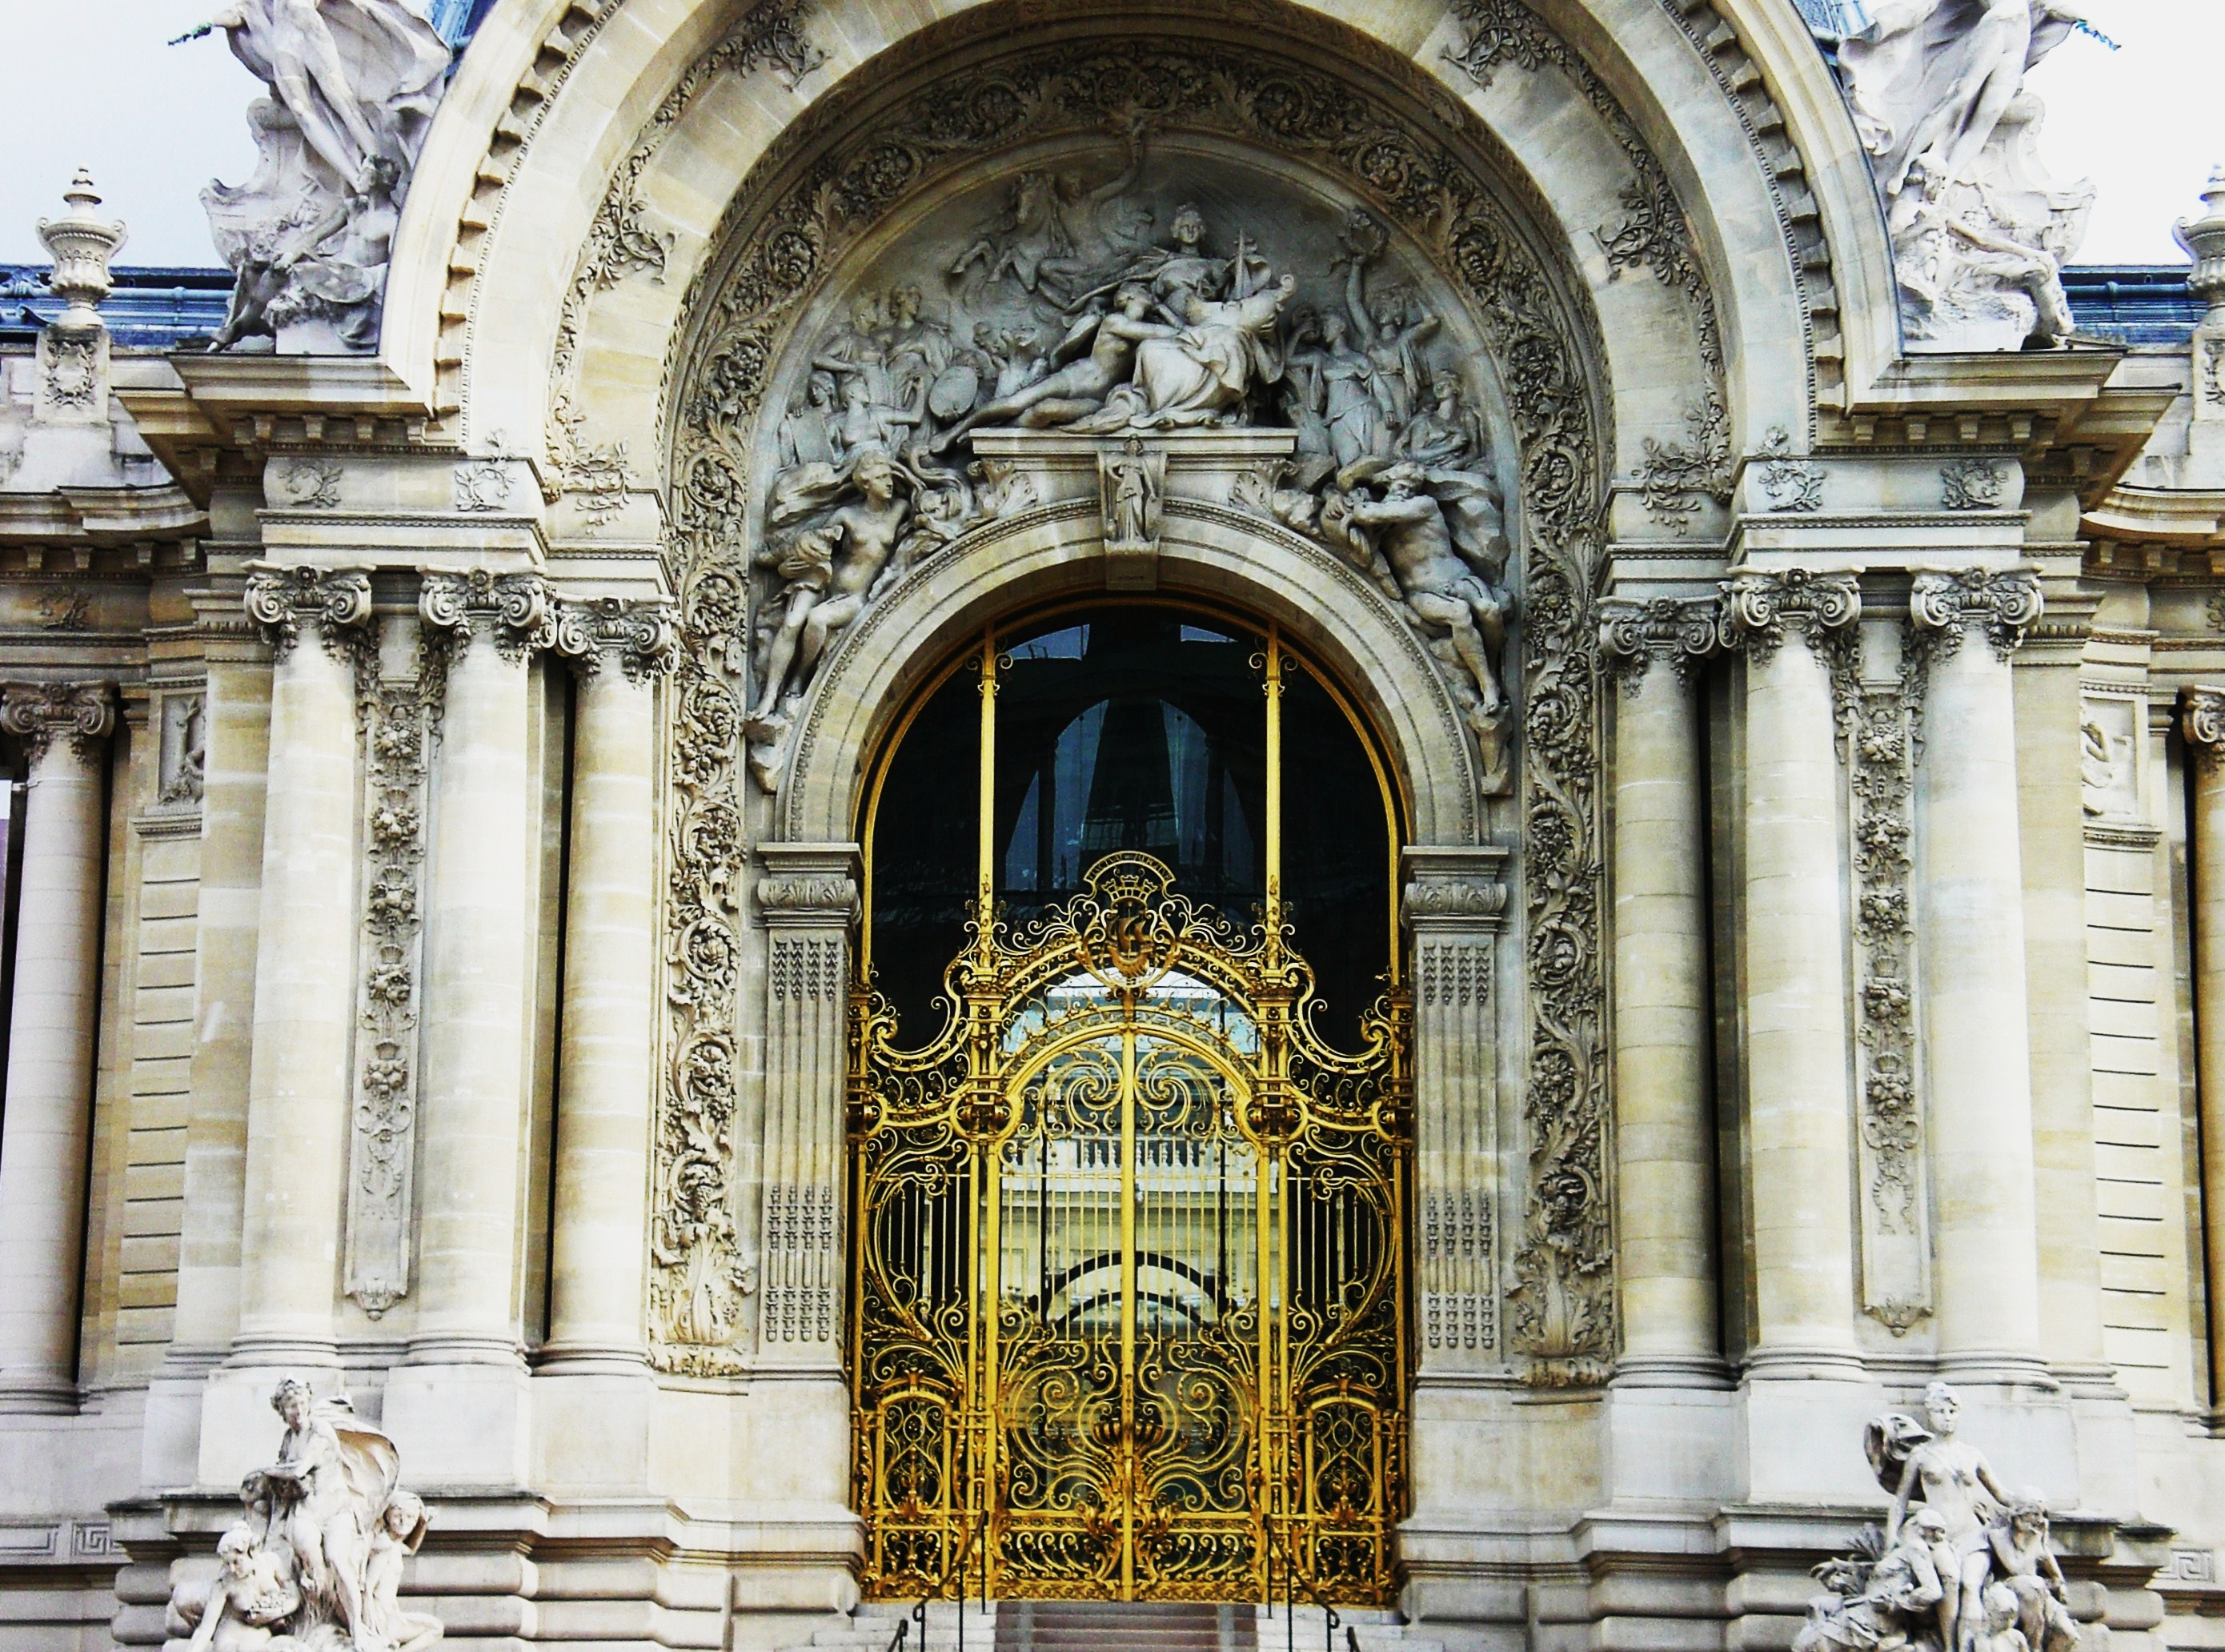 My favorite front door in Paris